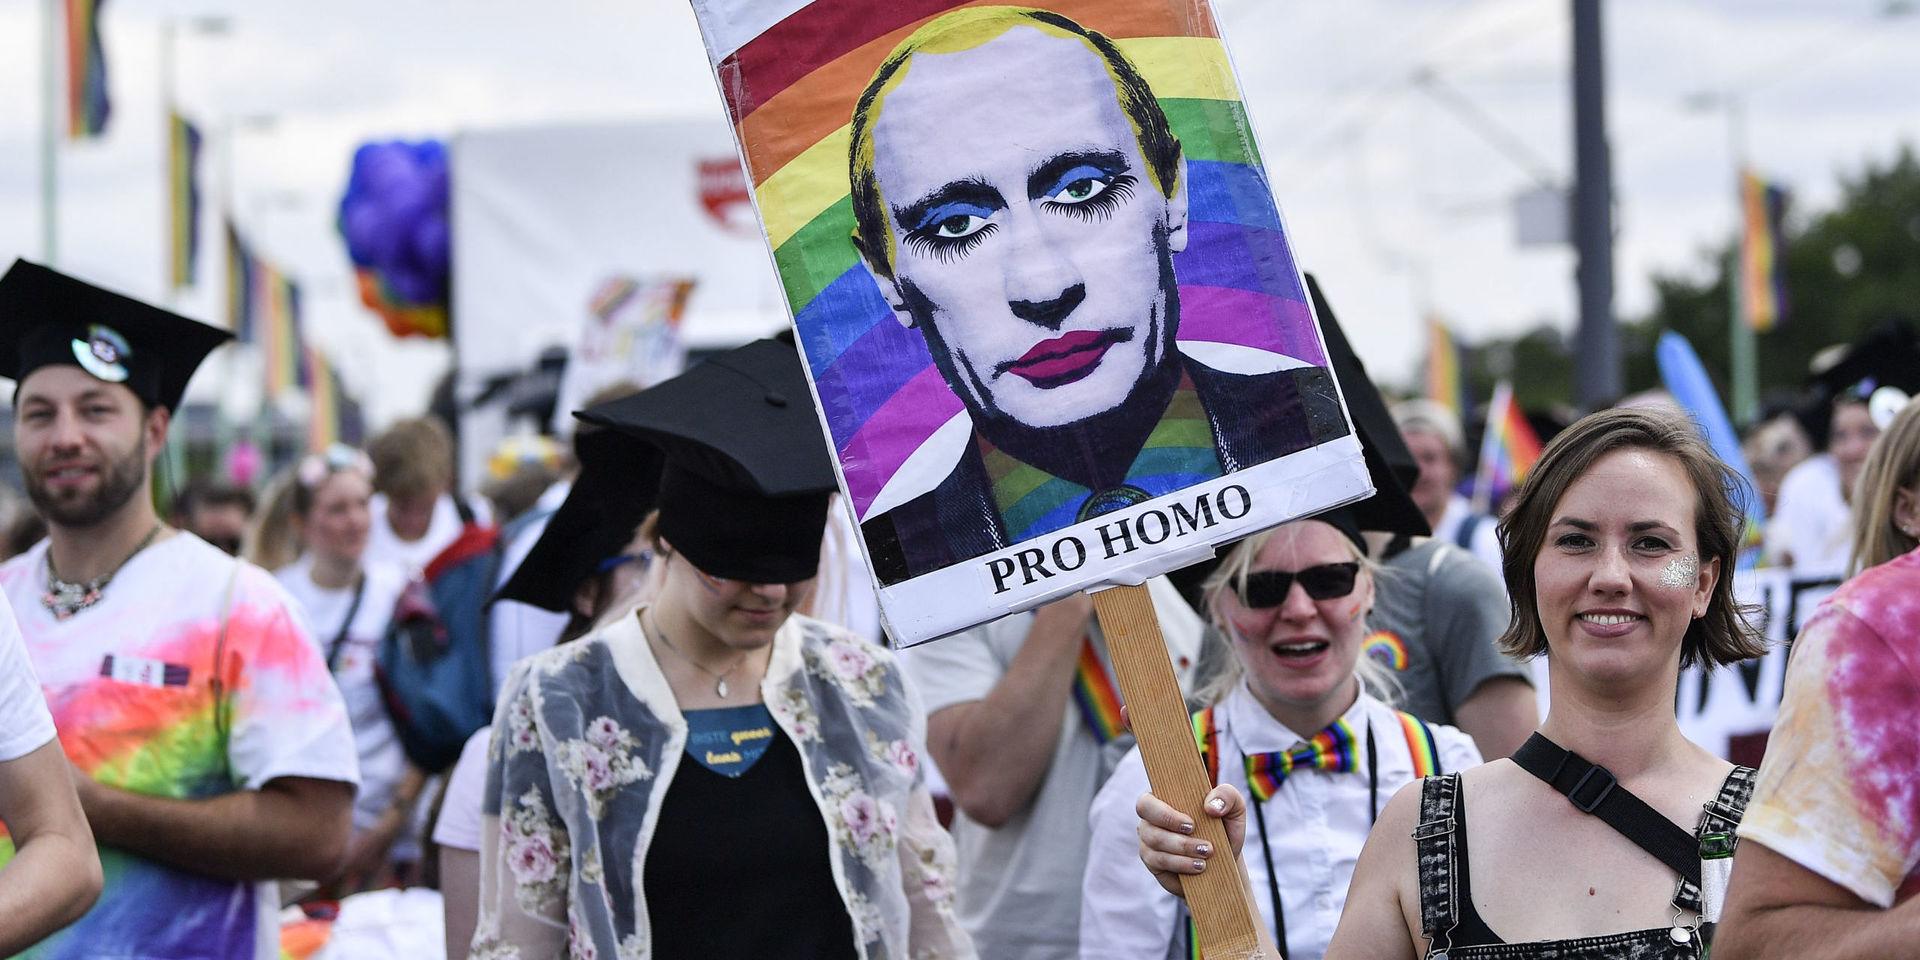 Rysslands president Vladimir Putin lär inte stärka sina aktier i gaykretsar efter sitt senaste uttalande om att äktenskapet uteslutande är ett heterosexuellt arrangemang. Bilden är från en tysk demonstration 2019.